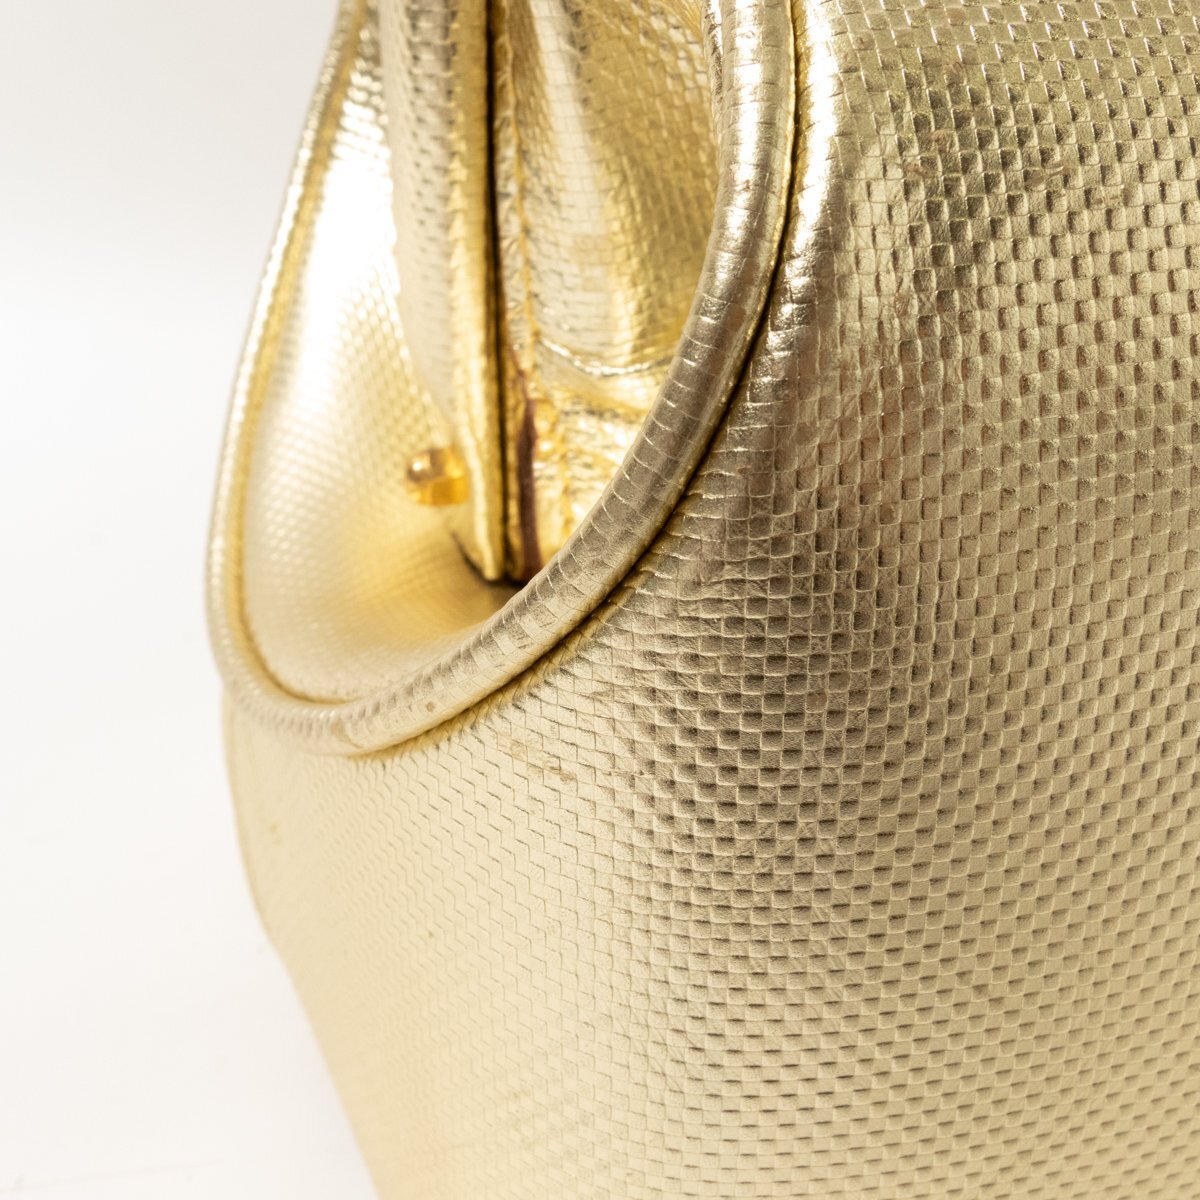 [1 иен старт ]PIAA JEANS сумка "Boston bag" Gold золотой цвет кожа натуральная кожа Италия производства унисекс для мужчин и женщин ключ имеется рука ..bag портфель сумка 